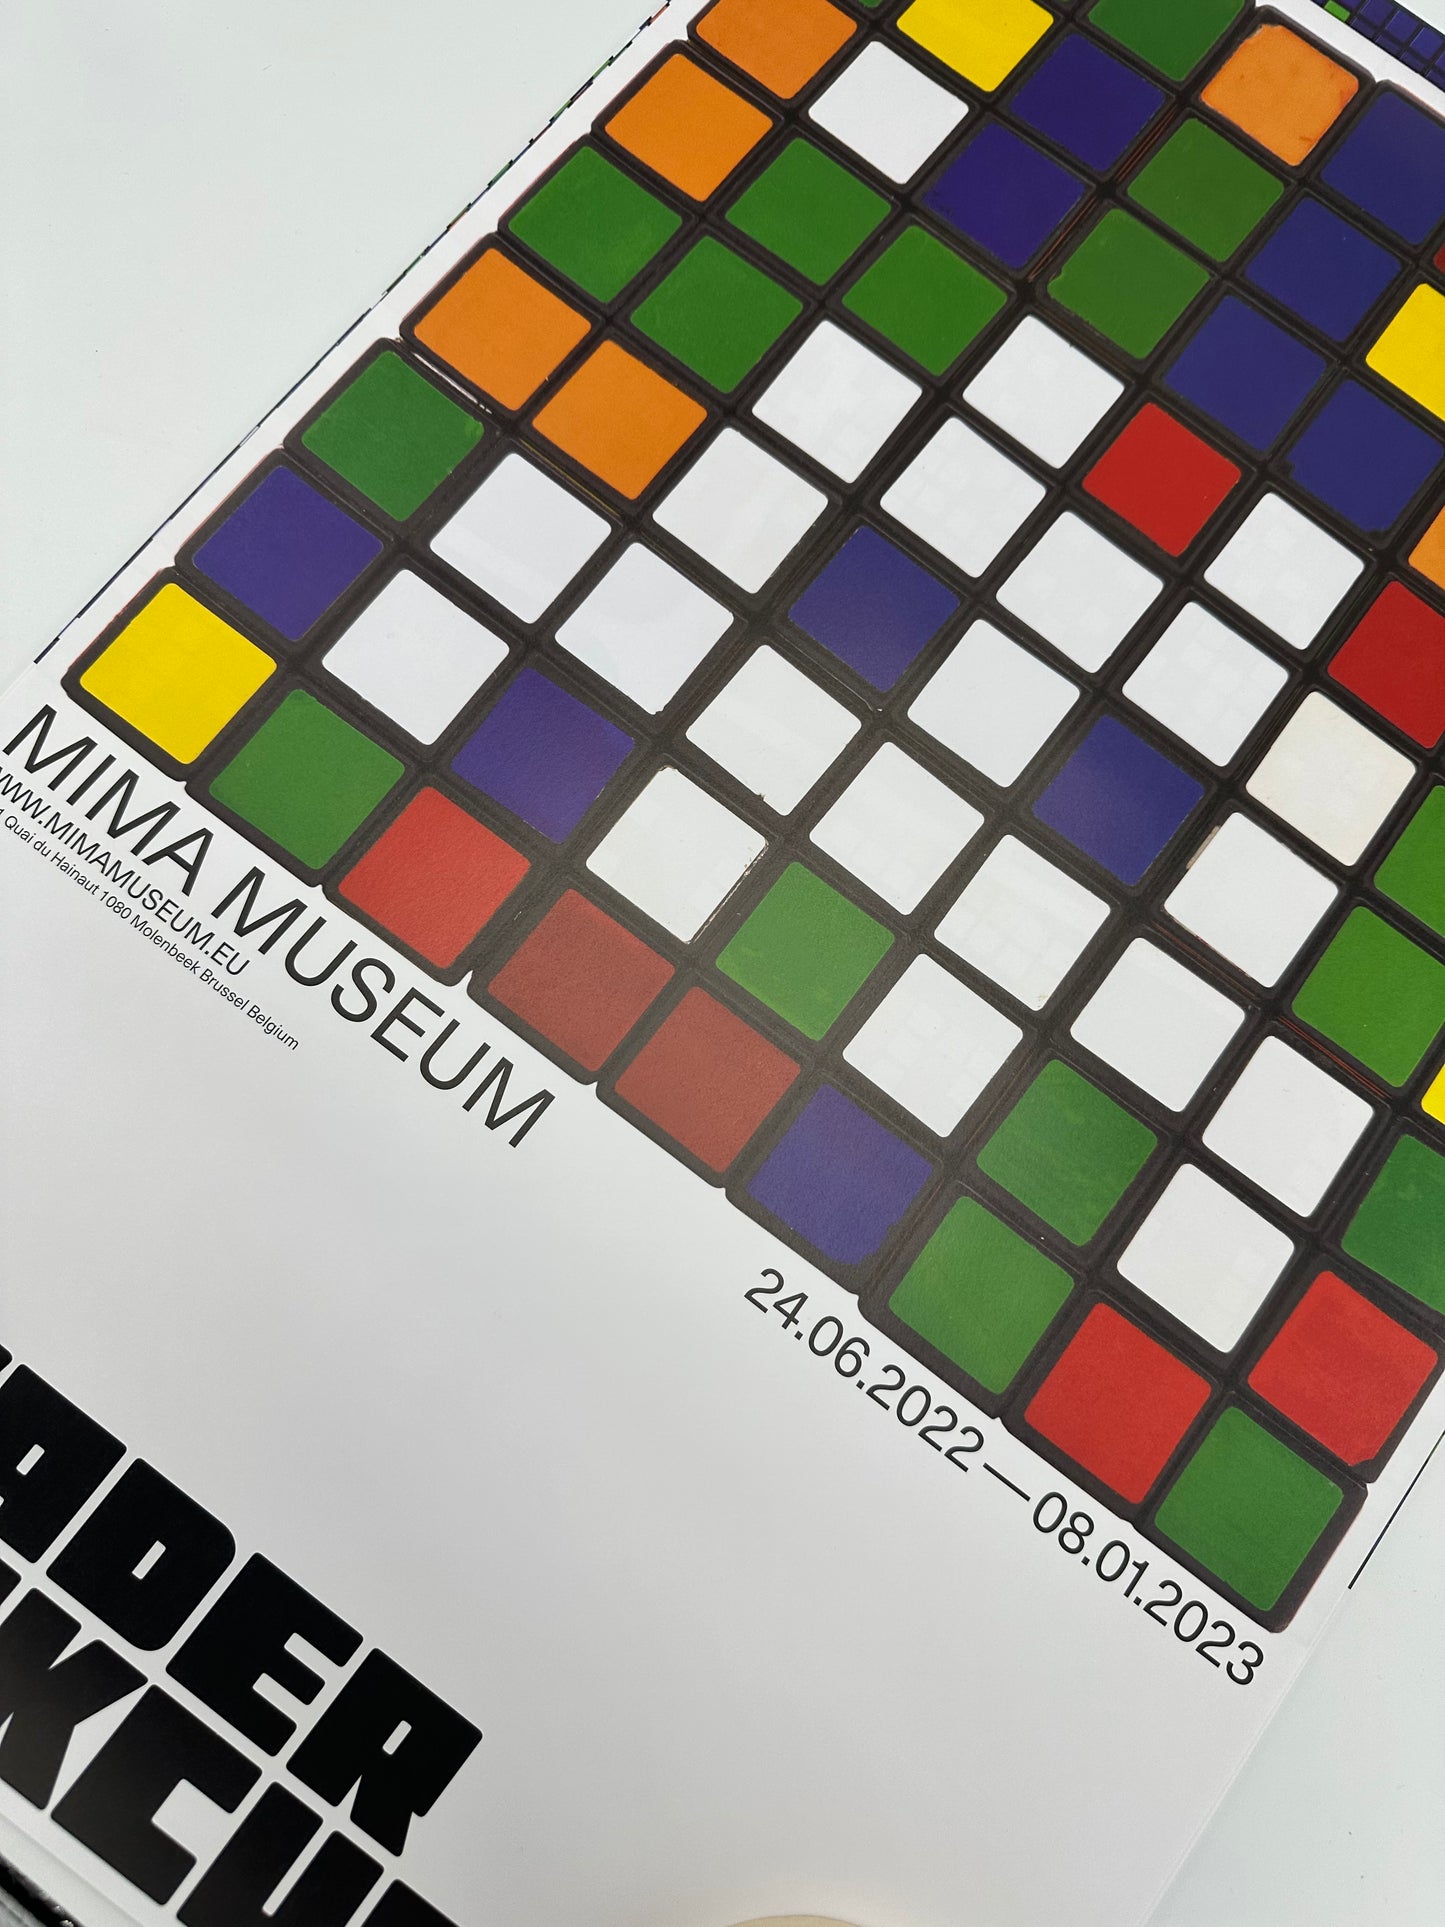 Invader - Affiche Rubikcubist 2022 / 2023